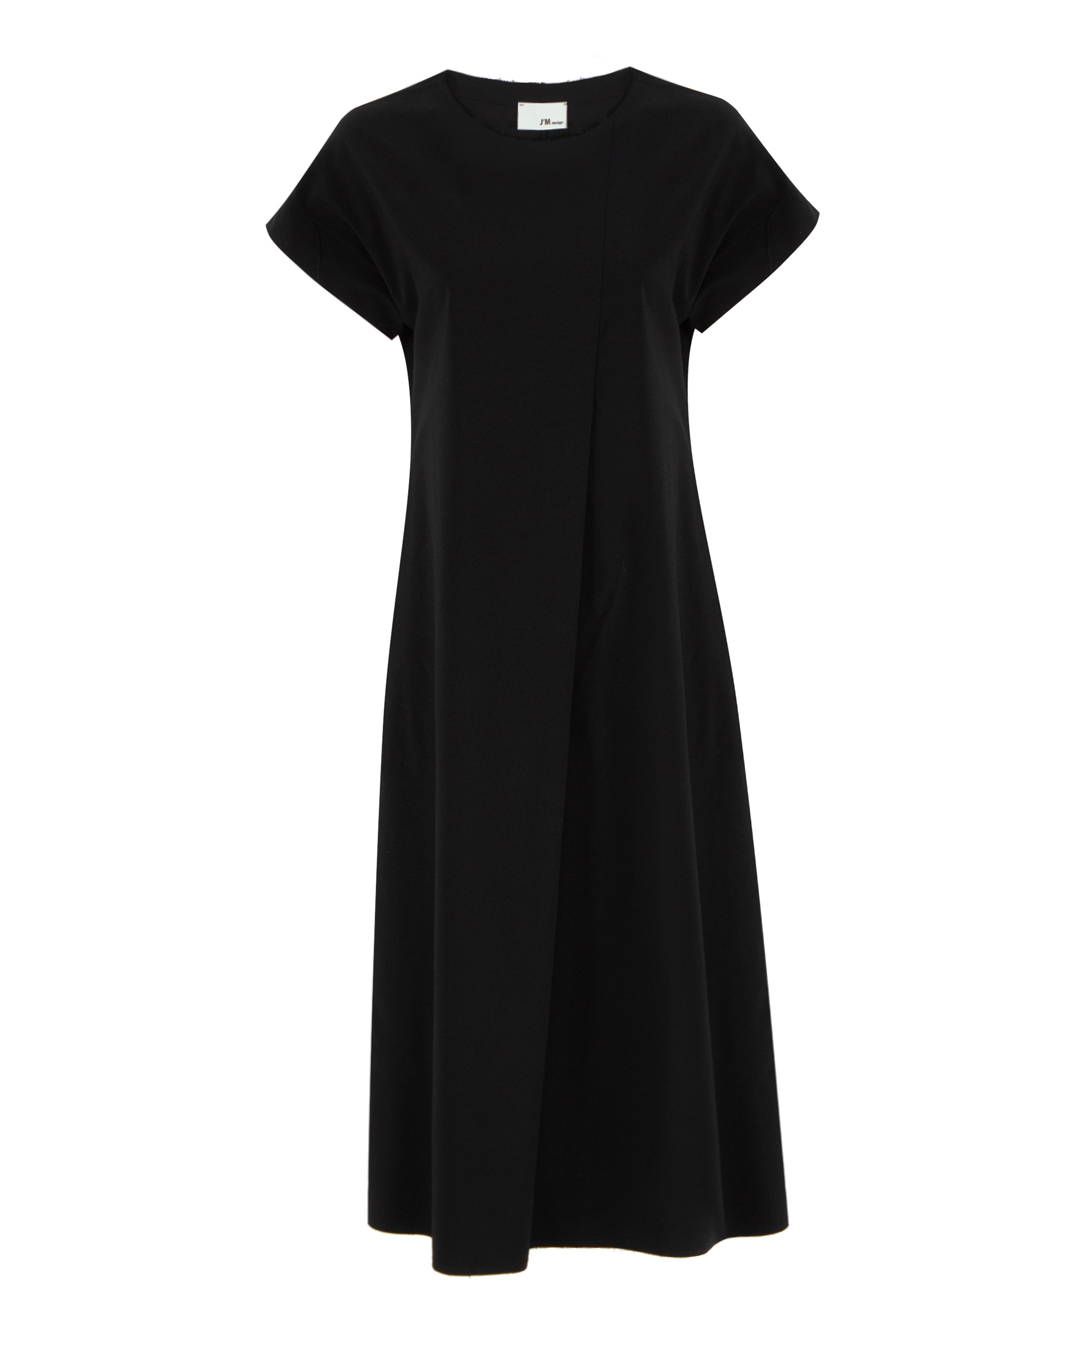 платье J.M design JM-AB1706 черный s, размер s